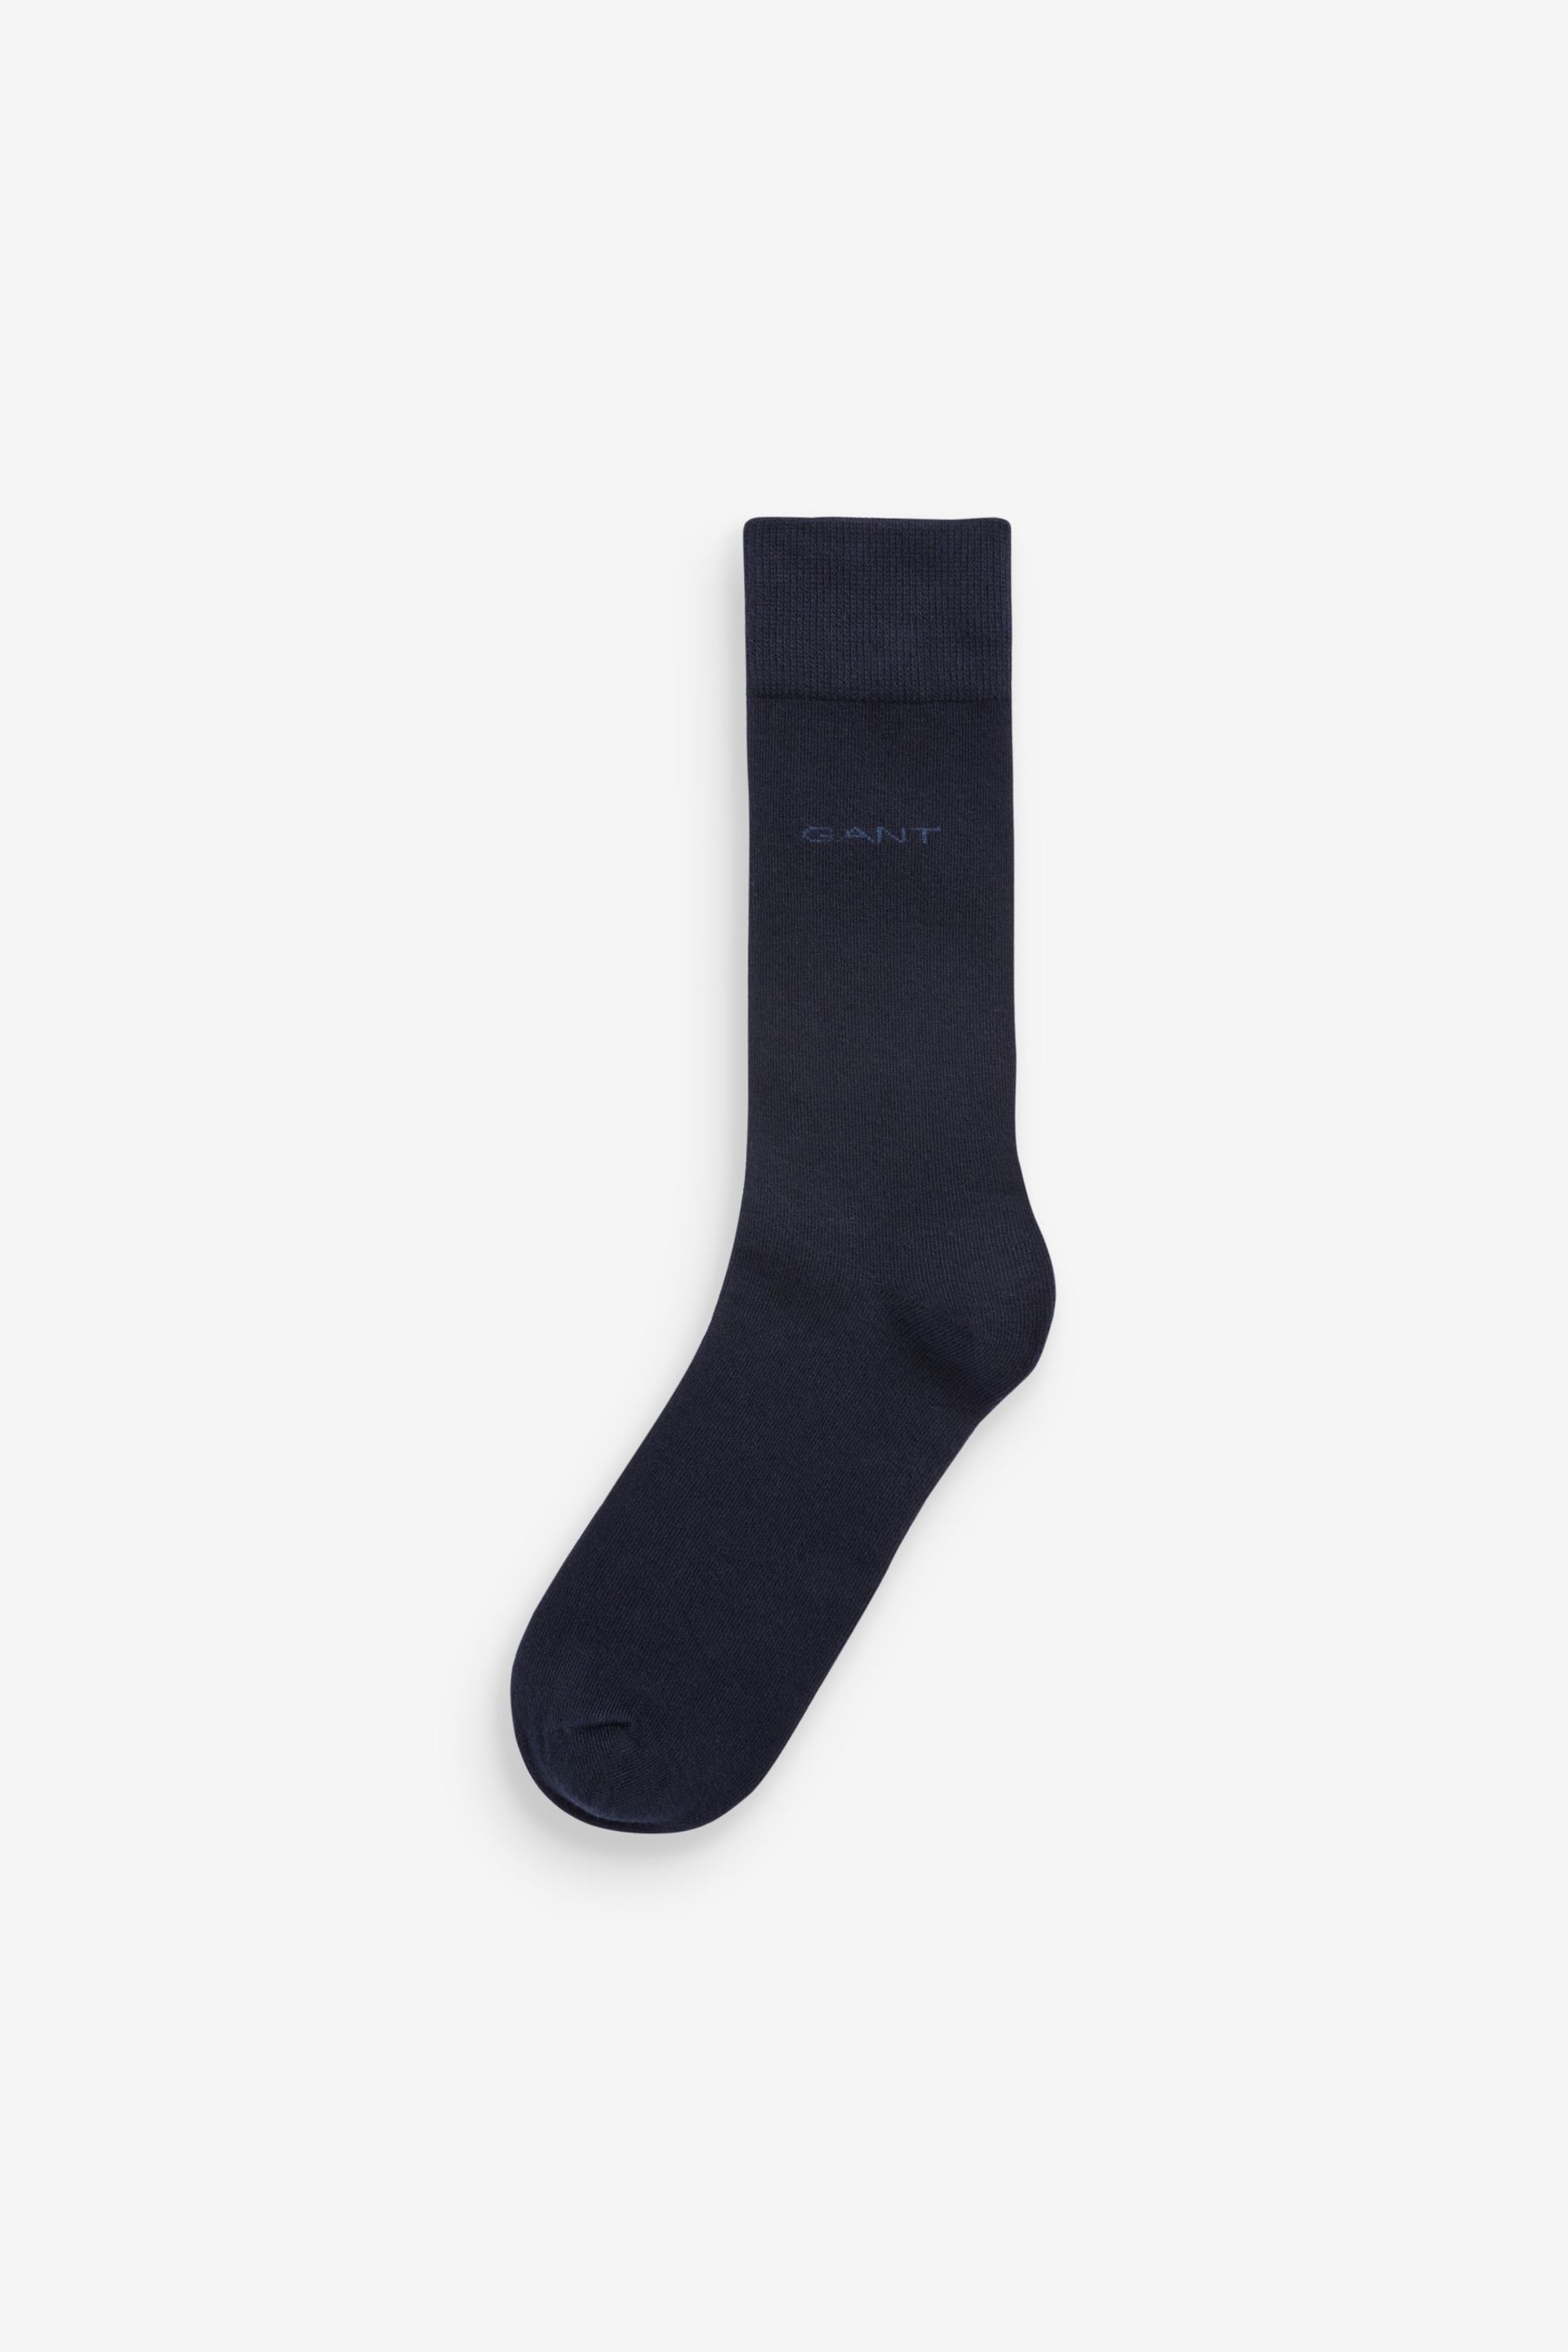 GANT Blue Soft Cotton Socks 3 Pack - Image 4 of 5